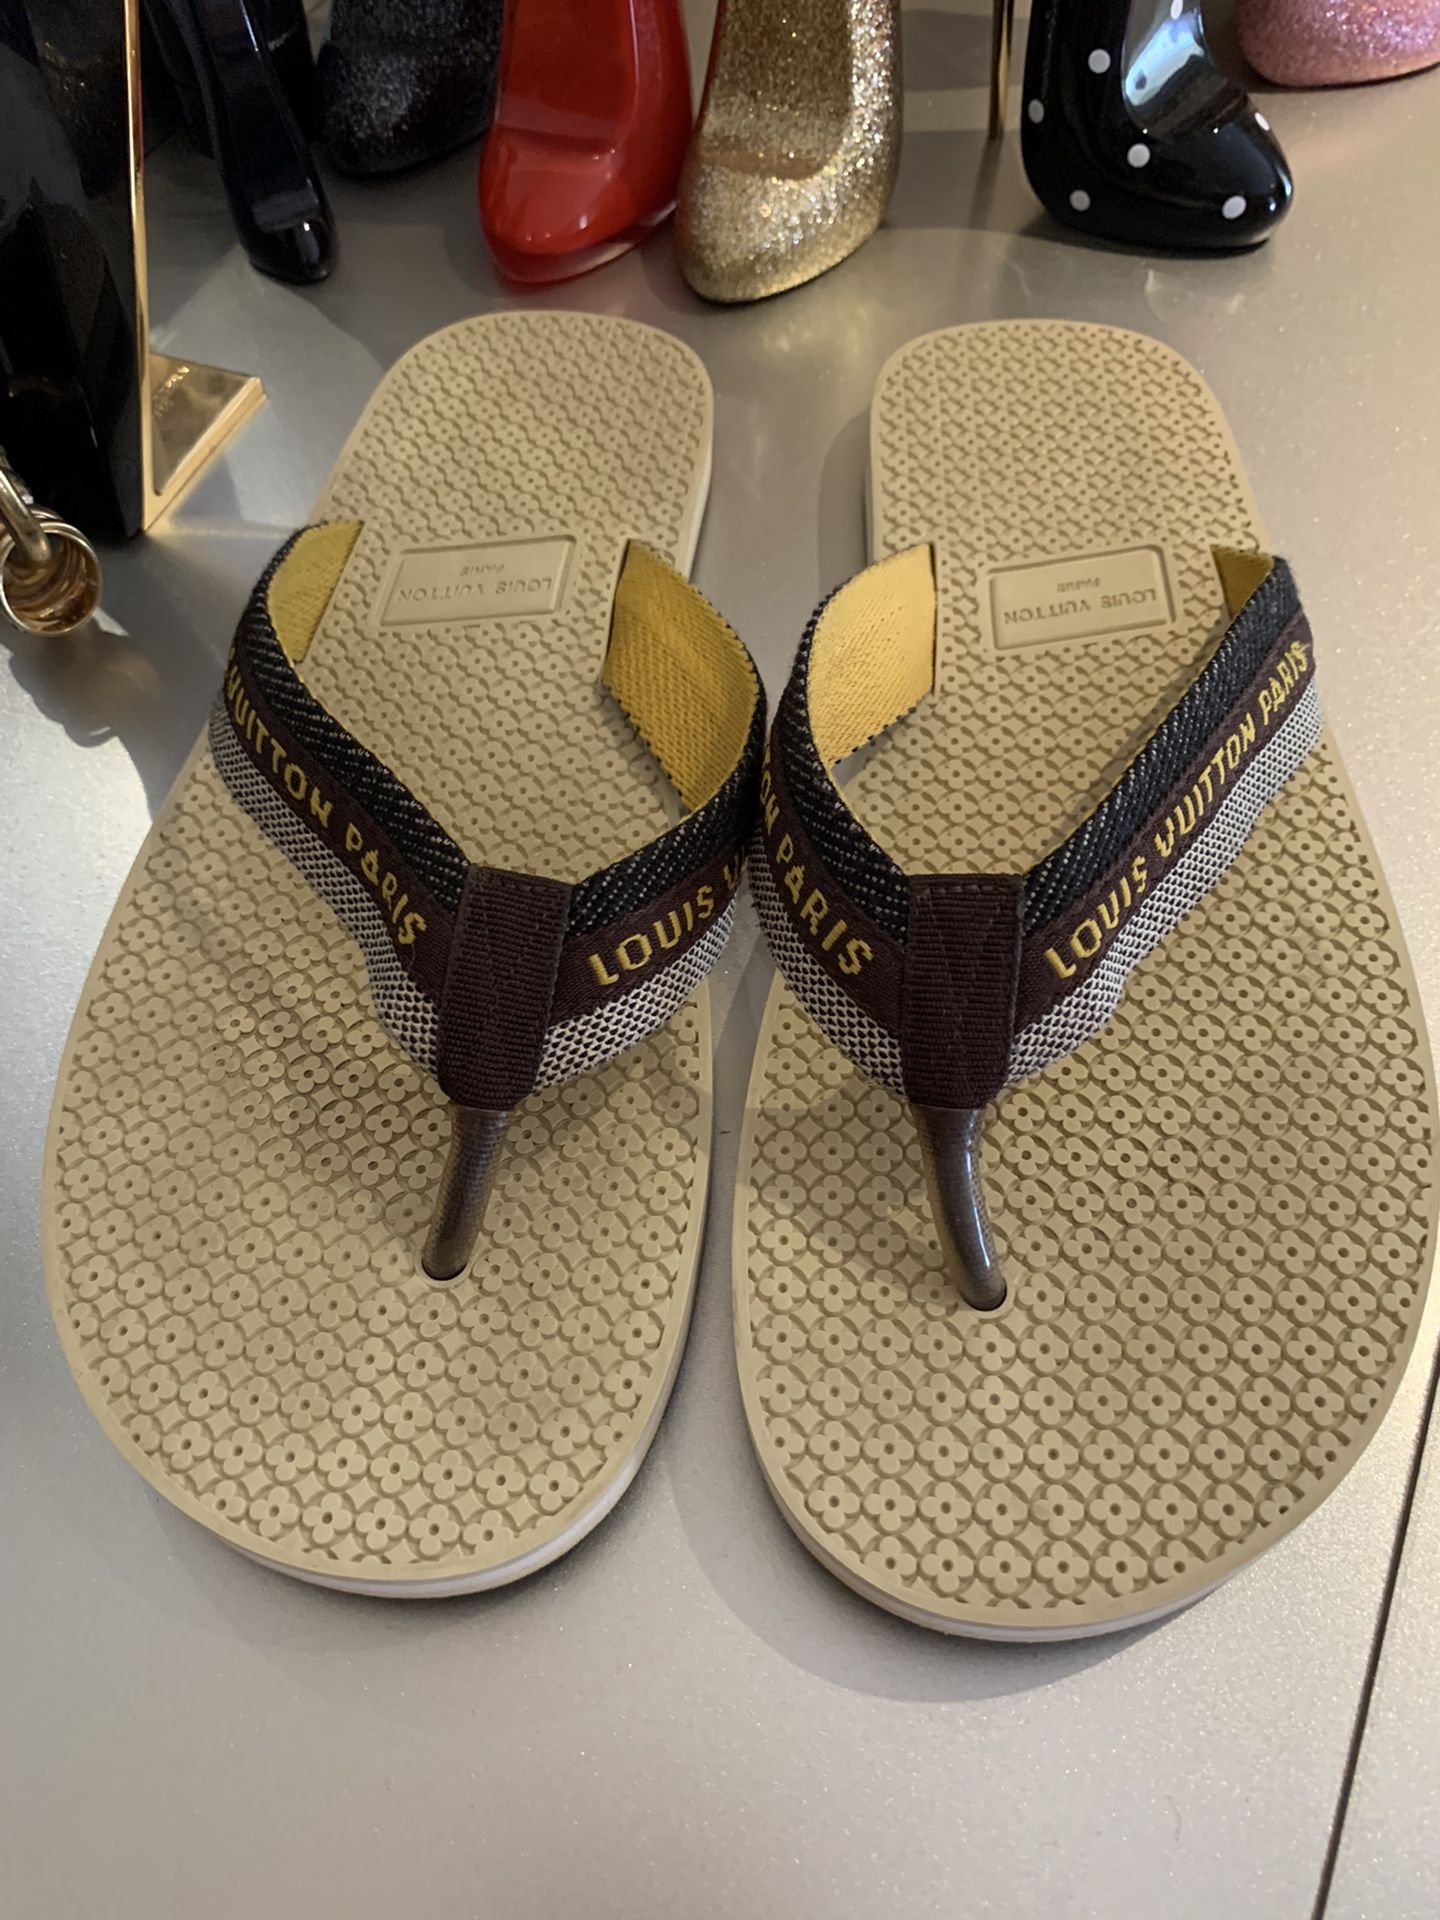 Louis Vuitton Bahia Thong Sandals - size 39